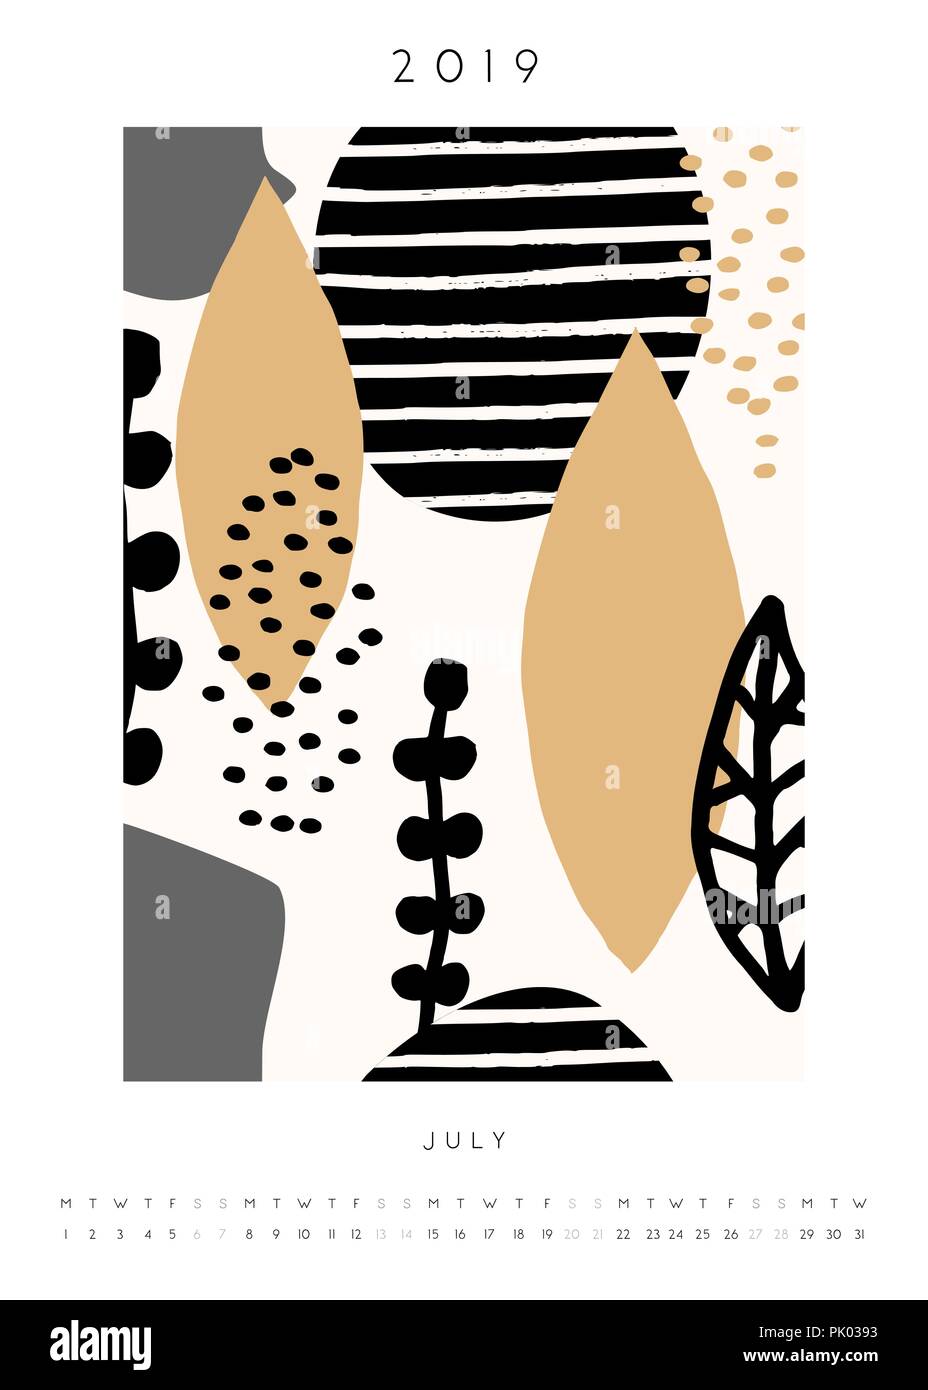 Versione stampabile formato A4 luglio 2019 calendario modello. Collage stile design con abstract e forme organiche in rosa pastello, giallo senape, grigio, nero e c Illustrazione Vettoriale